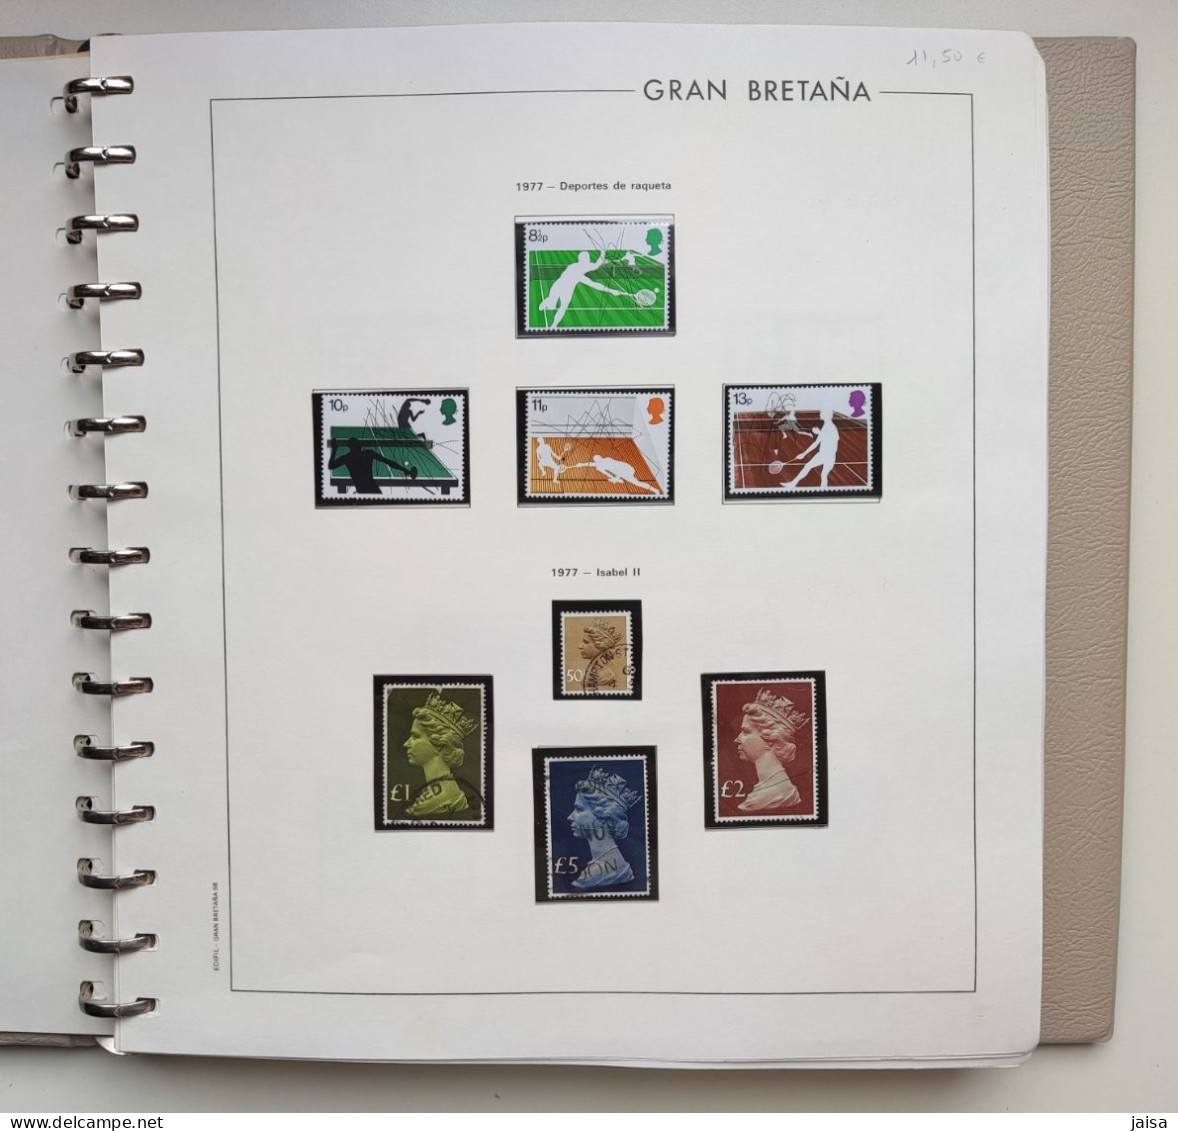 GRAN BRETAÑA. Años 1976 - 1989. Album, Hojas-suplementos Y Sellos. - Sammlungen (im Alben)